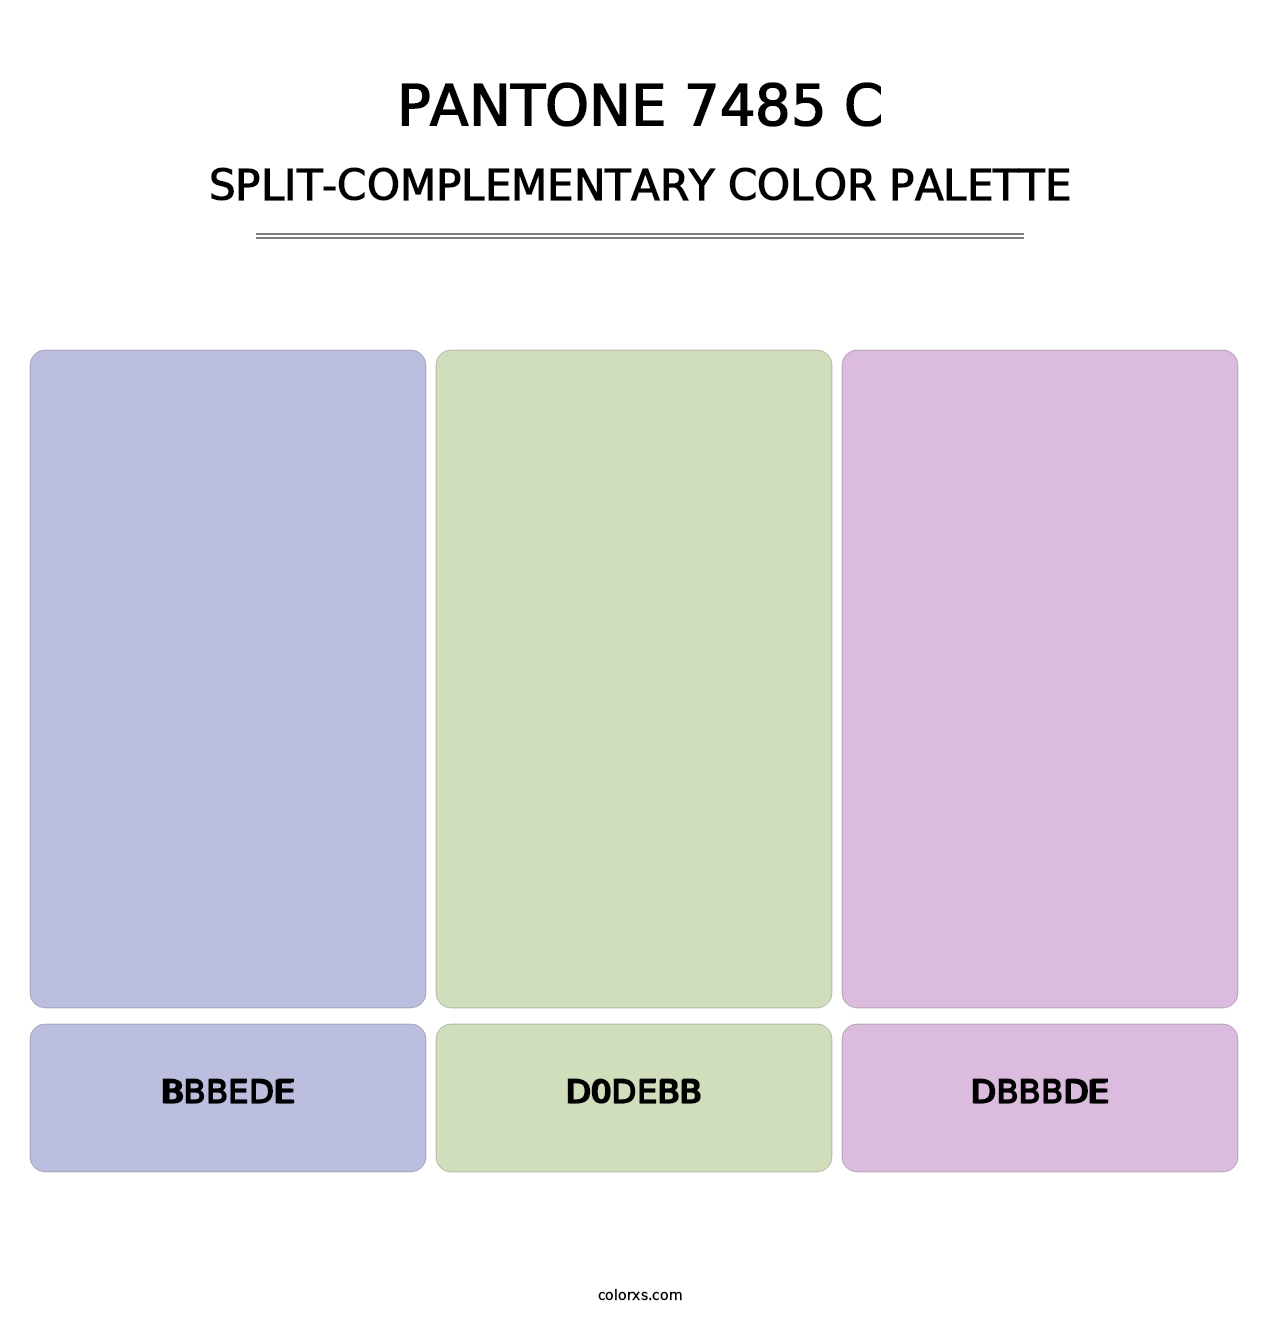 PANTONE 7485 C - Split-Complementary Color Palette